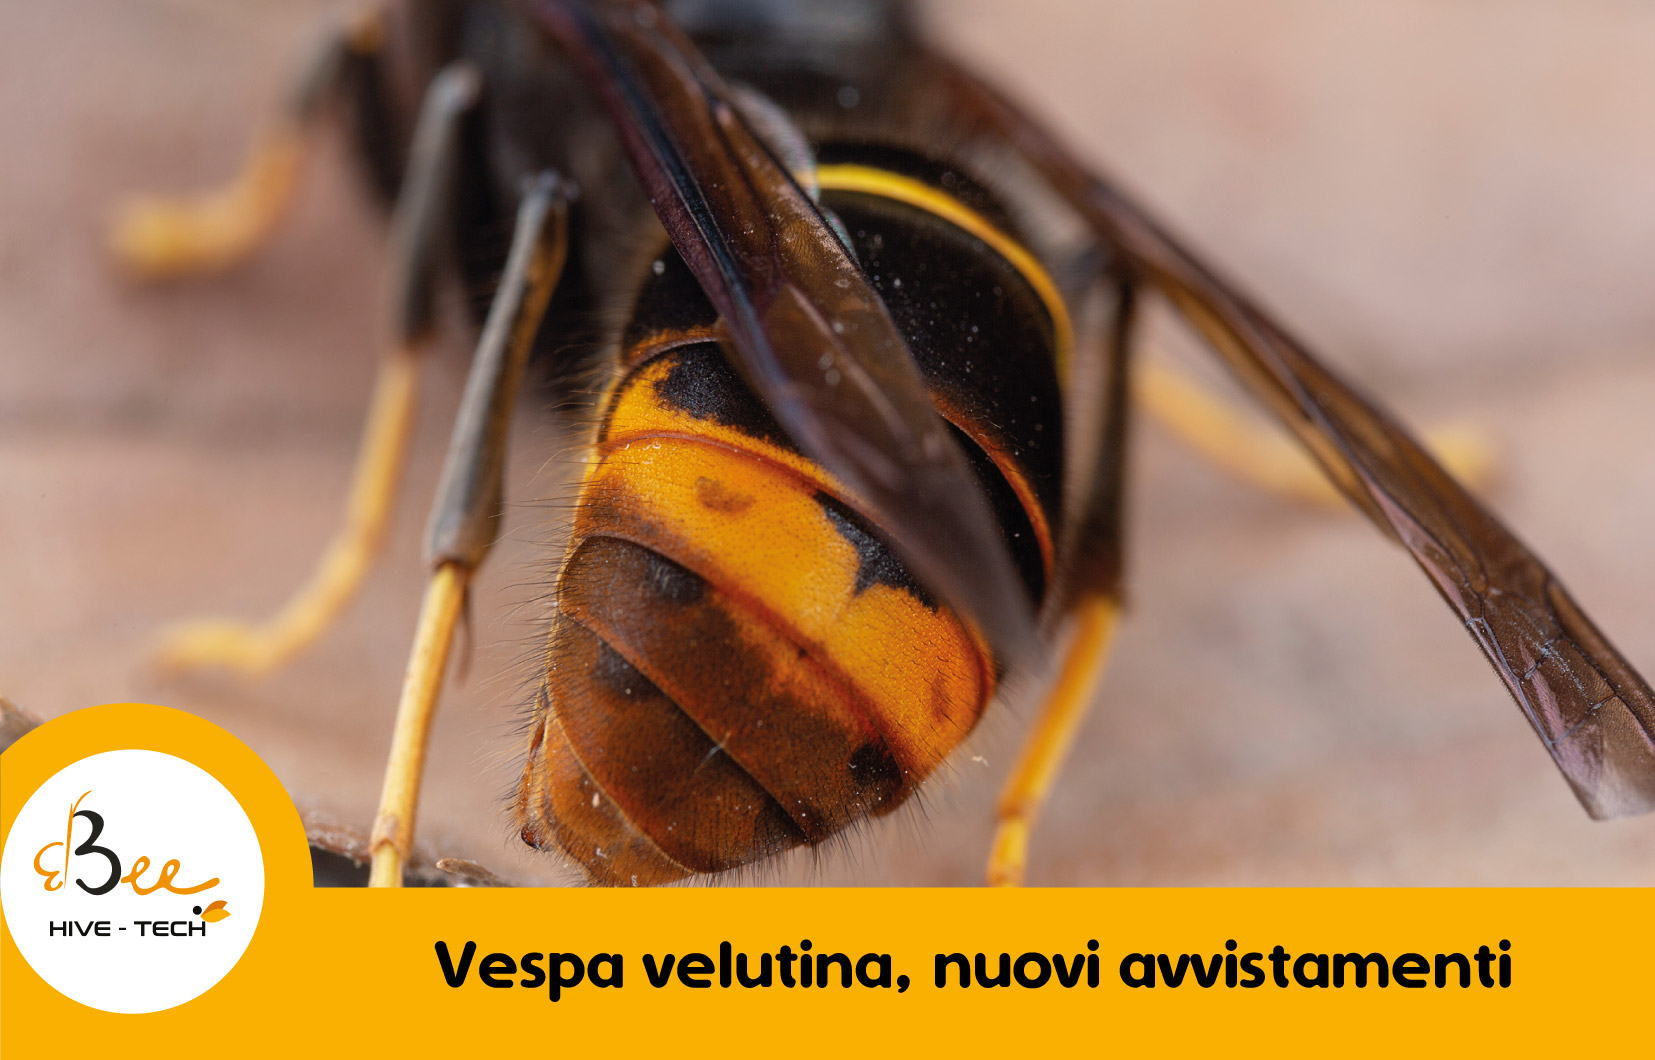 In Toscana arriva la vespa Velutina: killer delle api con gli ‘occhi a mandorla’